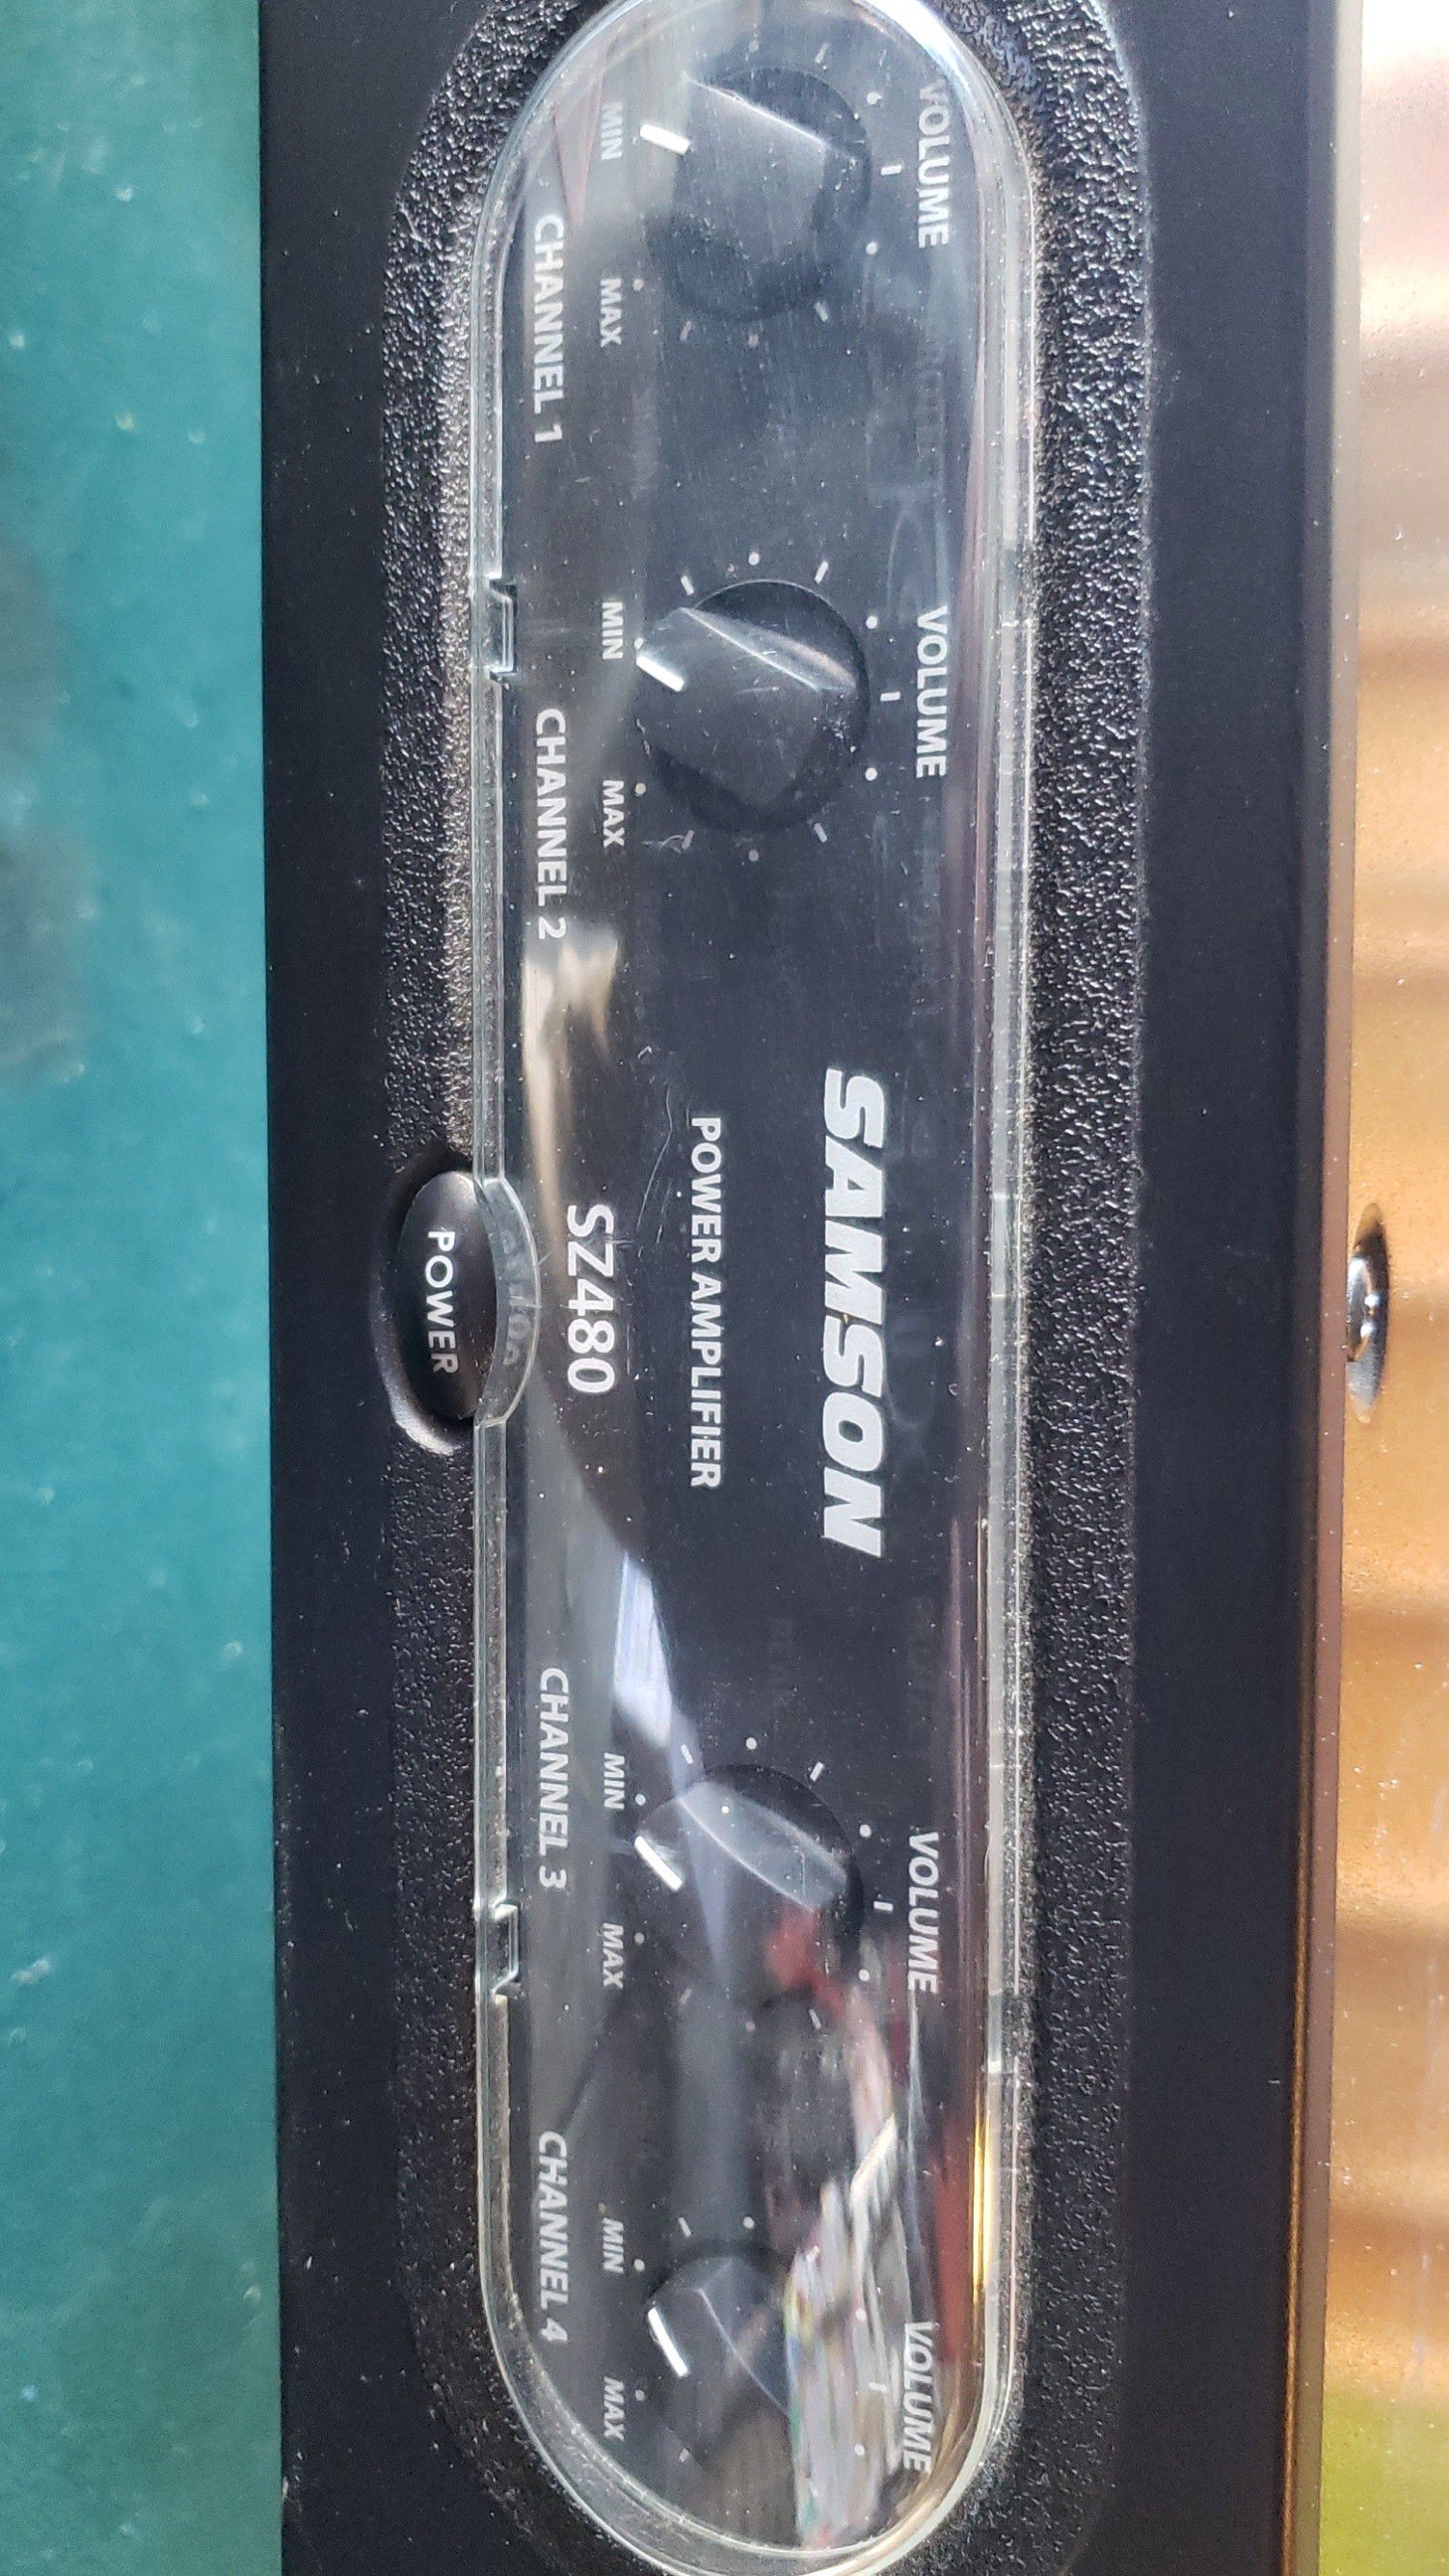 Samson power amp 2z480